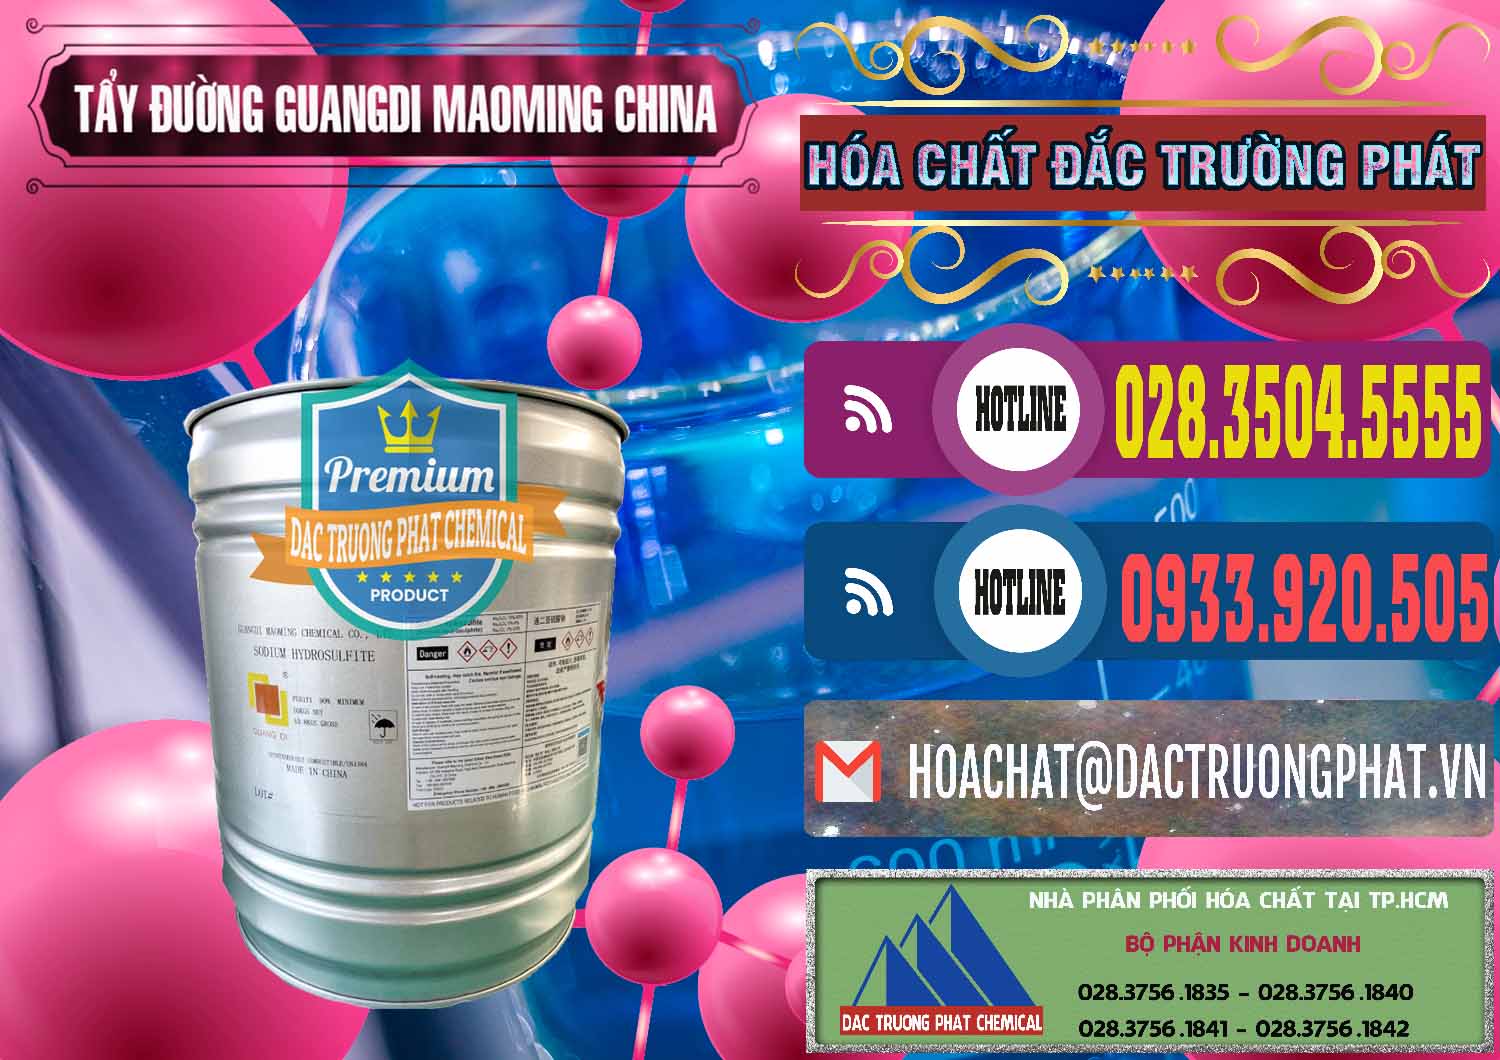 Cty chuyên cung cấp - bán Tẩy Đường - NA2S2O4 Guangdi Maoming Thùng Xám Trung Quốc China - 0402 - Đơn vị chuyên nhập khẩu - phân phối hóa chất tại TP.HCM - muabanhoachat.com.vn